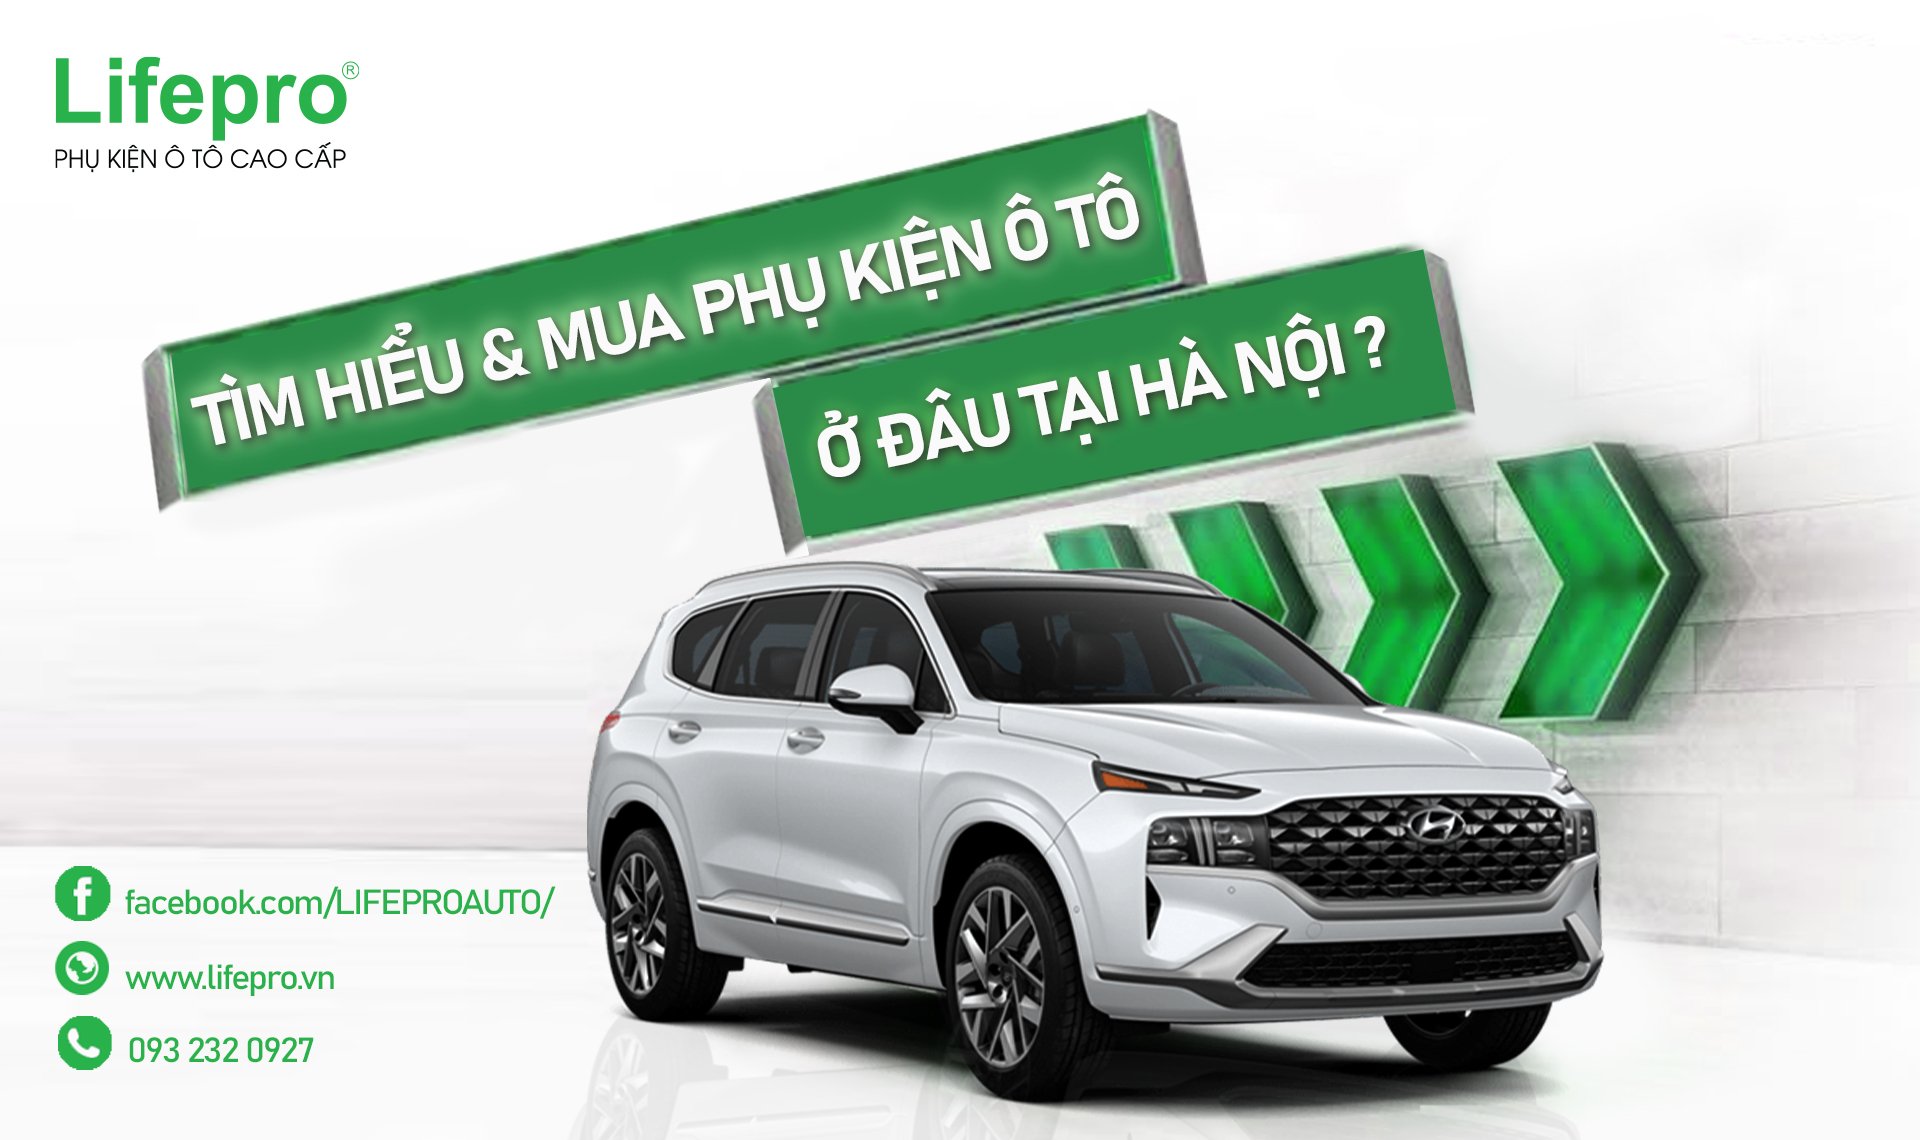 Tìm hiểu & mua phụ kiện ô tô ở đâu tốt nhất tại Hà Nội?